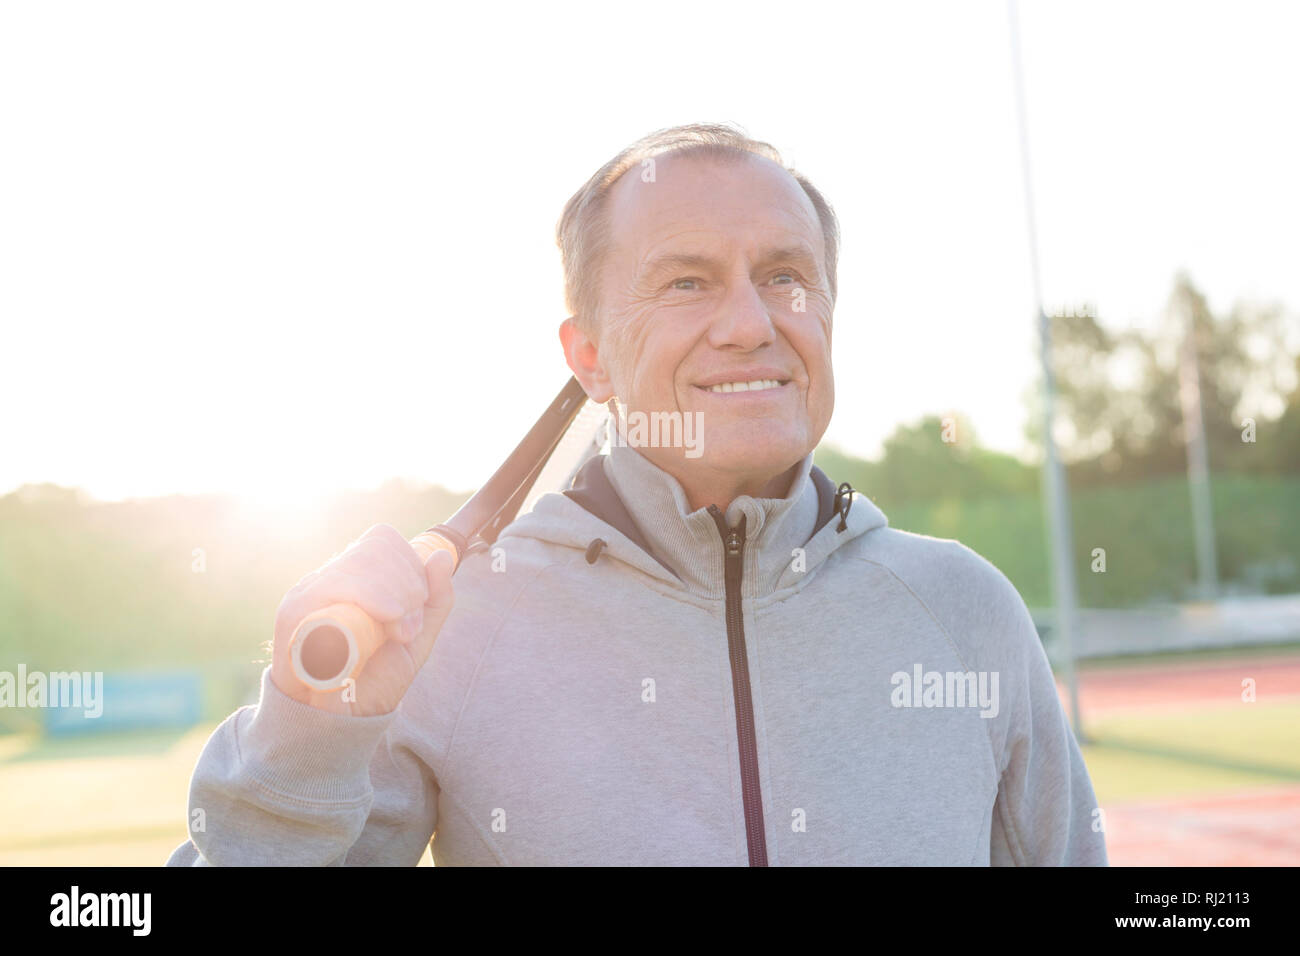 Smiling senior man standing avec raquette de tennis sur le court contre ciel clair Banque D'Images